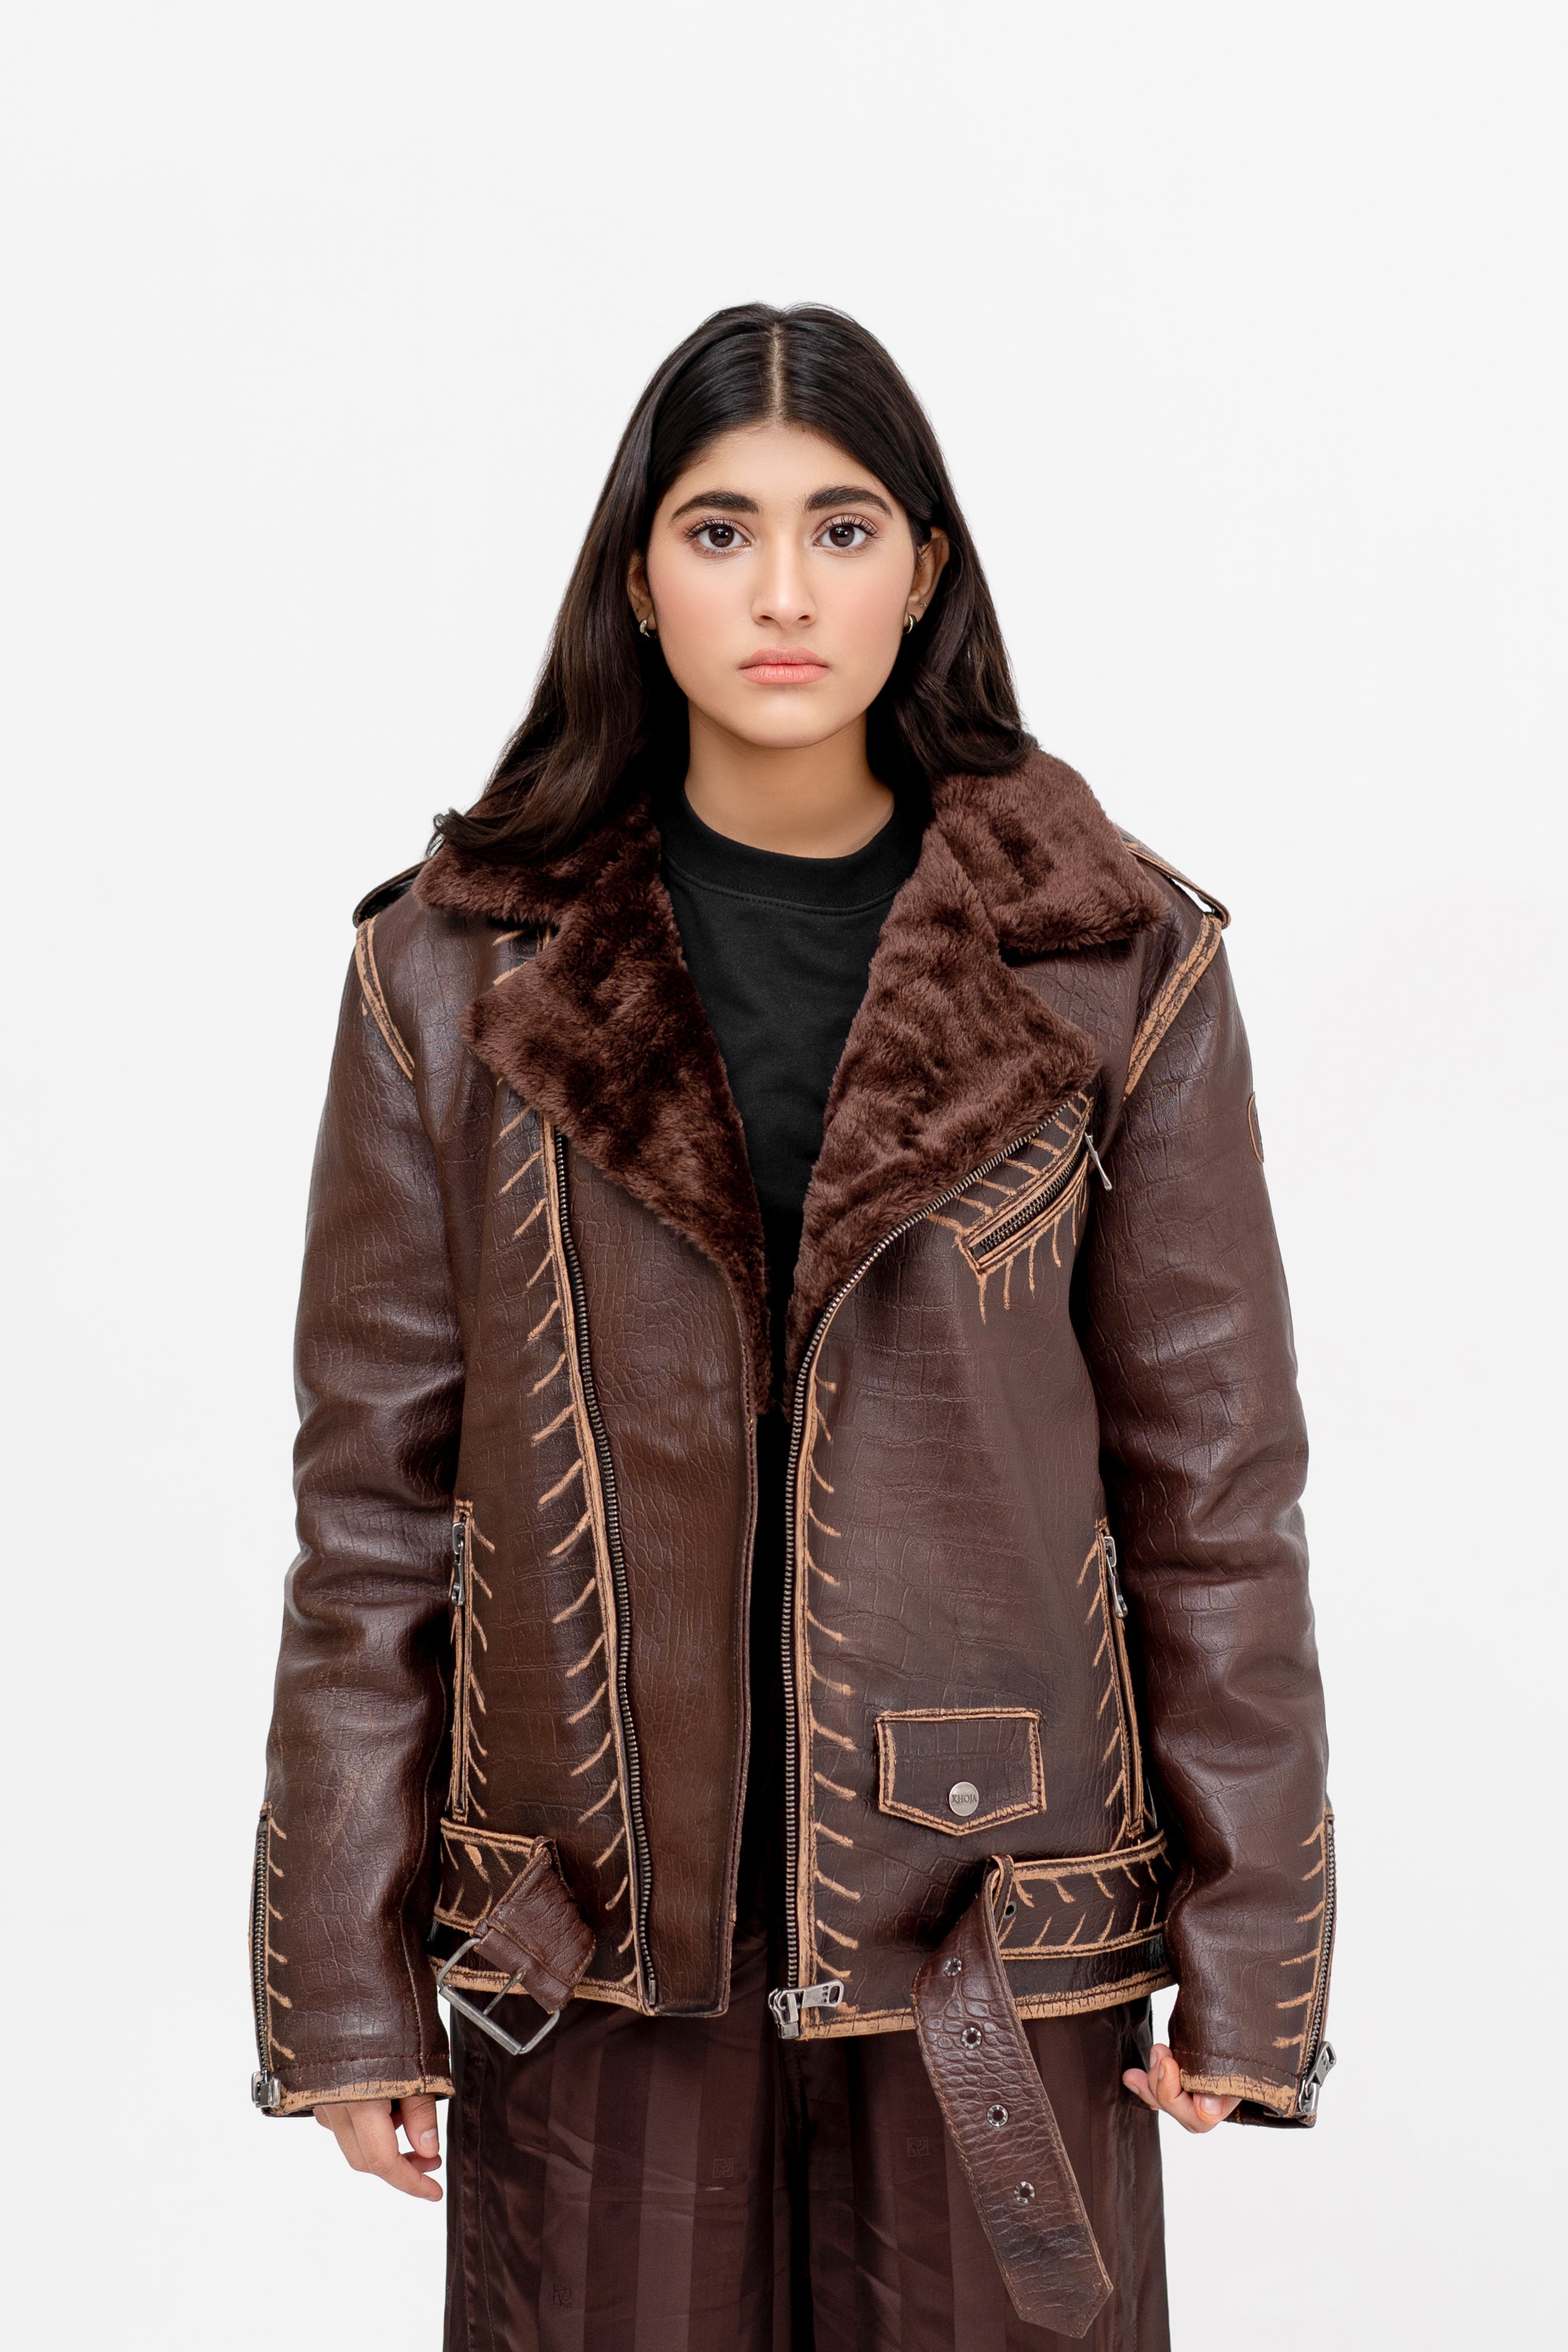 Gallery-Clad Maverick Rub Off Leather Jacket